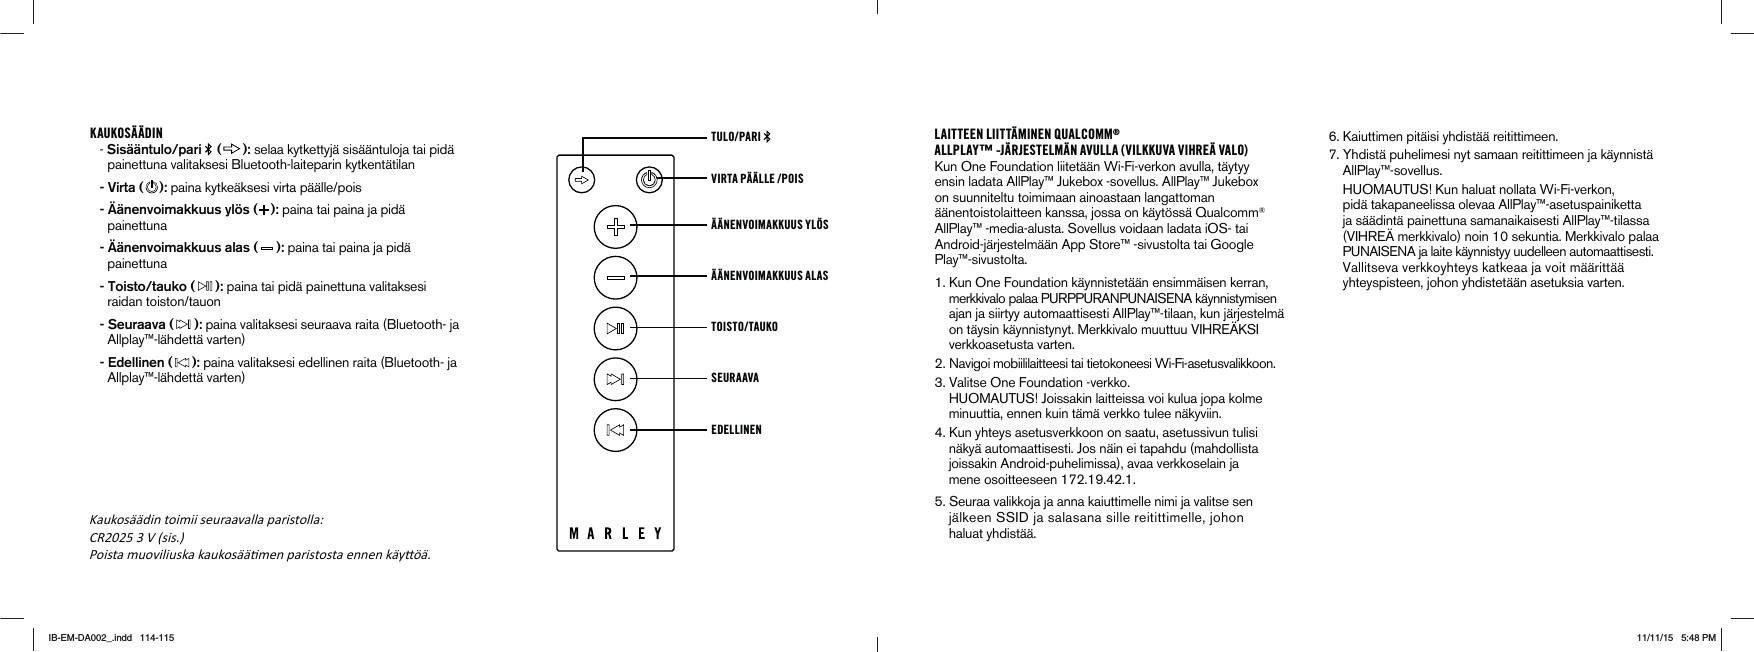 KAUKOSÄÄDIN- Sisääntulo/pari   ( ): selaa kytkettyjä sisääntuloja tai pidä painettuna valitaksesi Bluetooth-laiteparin kytkentätilan - Virta ( ): paina kytkeäksesi virta päälle/pois  - Äänenvoimakkuus ylös ( ): paina tai paina ja pidä painettuna - Äänenvoimakkuus alas ( ): paina tai paina ja pidä painettuna - Toisto/tauko ( ): paina tai pidä painettuna valitaksesi raidan toiston/tauon - Seuraava ( ): paina valitaksesi seuraava raita (Bluetooth- ja Allplay™-lähdettä varten) - Edellinen ( ): paina valitaksesi edellinen raita (Bluetooth- ja Allplay™-lähdettä varten) VIRTA PÄÄLLE /POIS TULO/PARI ÄÄNENVOIMAKKUUS YLÖS ÄÄNENVOIMAKKUUS ALAS TOISTO/TAUKOSEURAAVA EDELLINENLAITTEEN LIITTÄMINEN QUALCOMM®ALLPLAY™ -JÄRJESTELMÄN AVULLA (VILKKUVA VIHREÄ VALO)Kun One Foundation liitetään Wi-Fi-verkon avulla, täytyy ensin ladata AllPlay™ Jukebox -sovellus. AllPlay™ Jukebox on suunniteltu toimimaan ainoastaan langattoman äänentoistolaitteen kanssa, jossa on käytössä Qualcomm® AllPlay™ -media-alusta. Sovellus voidaan ladata iOS- tai Android-järjestelmään App Store™ -sivustolta tai Google Play™-sivustolta. 1. Kun One Foundation käynnistetään ensimmäisen kerran,   MERKKIVALOPALAA0520052!.05.!)3%.!K¹YNNISTYMISEN    ajan ja siirtyy automaattisesti AllPlay™-tilaan, kun järjestelmä  ONT¹YSINK¹YNNISTYNYT-ERKKIVALOMUUTTUU6)(2%¯+3)     verkkoasetusta varten. .AVIGOIMOBIILILAITTEESITAITIETOKONEESI7I&amp;IASETUSVALIKKOON 6ALITSE/NE&amp;OUNDATIONVERKKO (5/-!5453Ð*OISSAKINLAITTEISSAVOIKULUAJOPAKOLME     minuuttia, ennen kuin tämä verkko tulee näkyviin. 4. Kun yhteys asetusverkkoon on saatu, asetussivun tulisi        näkyä automaattisesti. Jos näin ei tapahdu (mahdollista            joissakin Android-puhelimissa), avaa verkkoselain ja  MENEOSOITTEESEEN3EURAAVALIKKOJAJAANNAKAIUTTIMELLENIMIJAVALITSESEN J¹LKEEN33)$JASALASANASILLEREITITTIMELLEJOHON     haluat yhdistää. 6. Kaiuttimen pitäisi yhdistää reitittimeen.  7. Yhdistä puhelimesi nyt samaan reitittimeen ja käynnistä      AllPlay™-sovellus.      (5/-!5453Ð+UNHALUATNOLLATA7I&amp;IVERKON    pidä takapaneelissa olevaa AllPlay™-asetuspainiketta      ja säädintä painettuna samanaikaisesti AllPlay™-tilassa  6)(2%¯MERKKIVALONOINSEKUNTIA-ERKKIVALOPALAA05.!)3%.!JALAITEK¹YNNISTYYUUDELLEENAUTOMAATTISESTI6ALLITSEVAVERKKOYHTEYSKATKEAAJAVOITM¹¹RITT¹¹    yhteyspisteen, johon yhdistetään asetuksia varten.&lt;aukosććdin toimii seuraavalla paristolla͗ CR2025 3 V (sis.Ϳ Poista muoviliuska kaukosććƟmen paristosta ennen kćyƩöć.IB-EM-DA002_.indd   114-115 11/11/15   5:48 PM